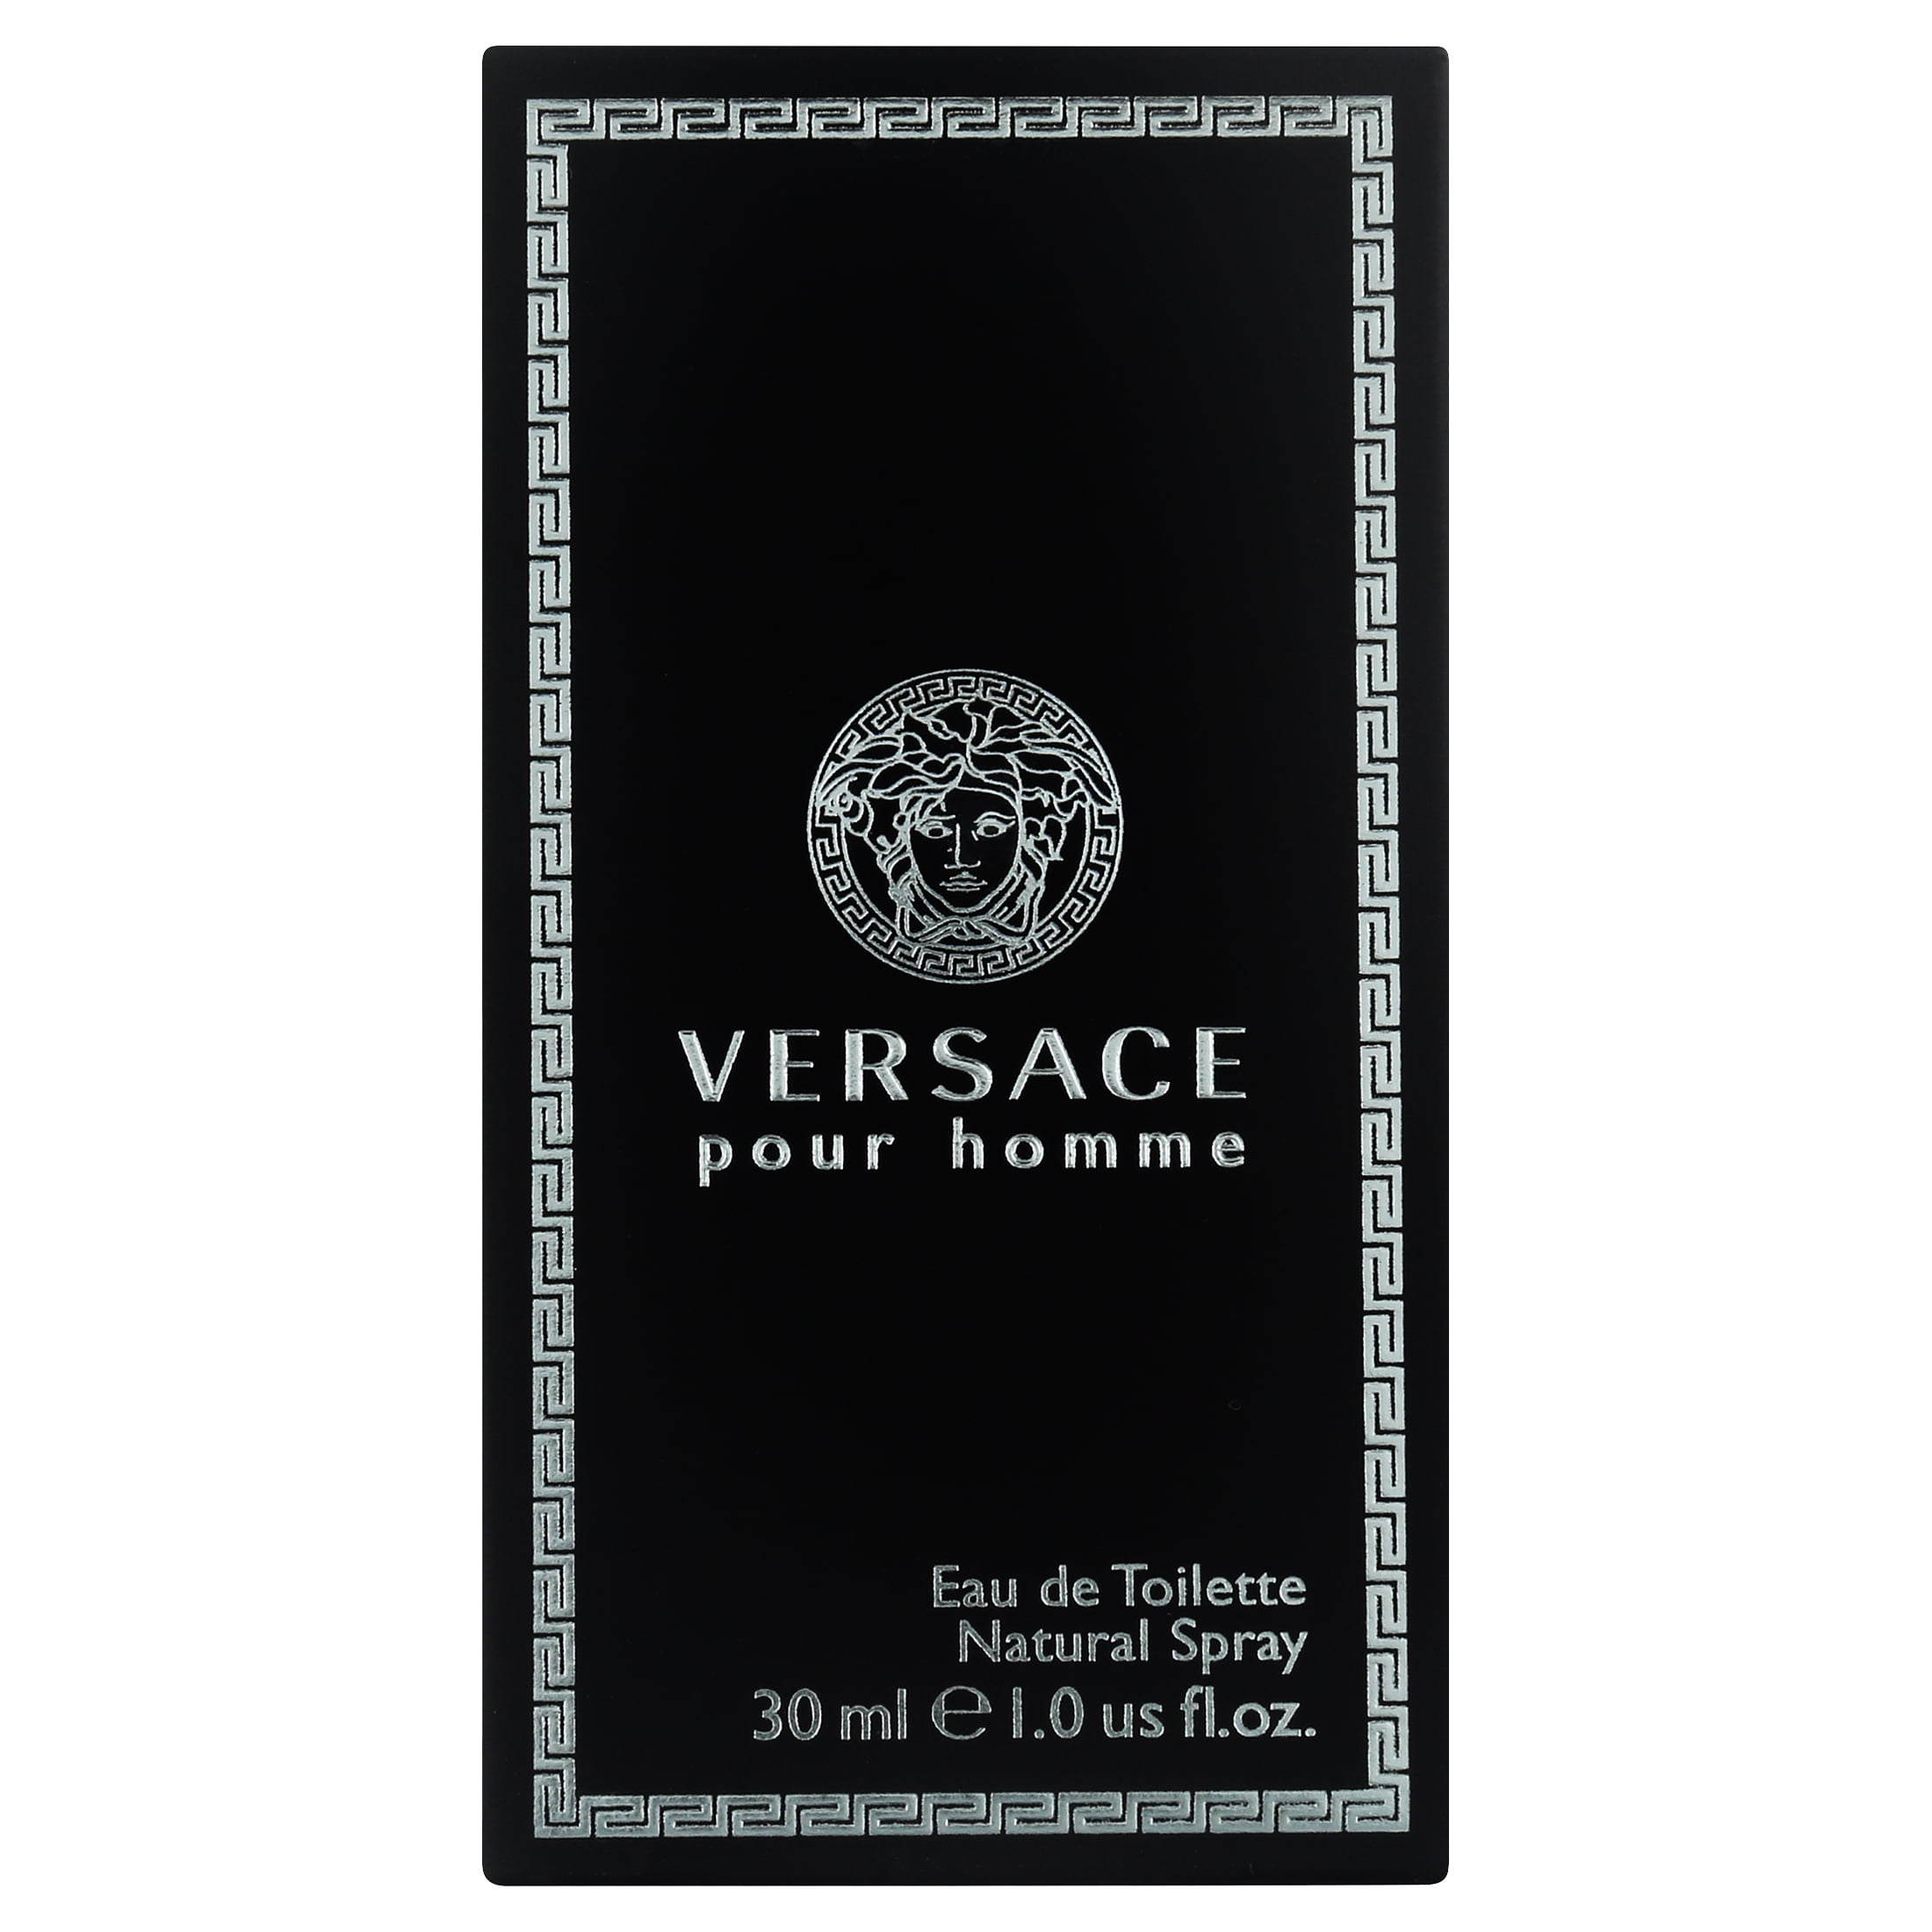 GetUSCart- Versace Pour Homme for Men 3 Piece Set Includes: 3.4 oz Eau de  Toilette Spray + 0.3 oz Eau de Toilette Travel Spray + Black Trousse